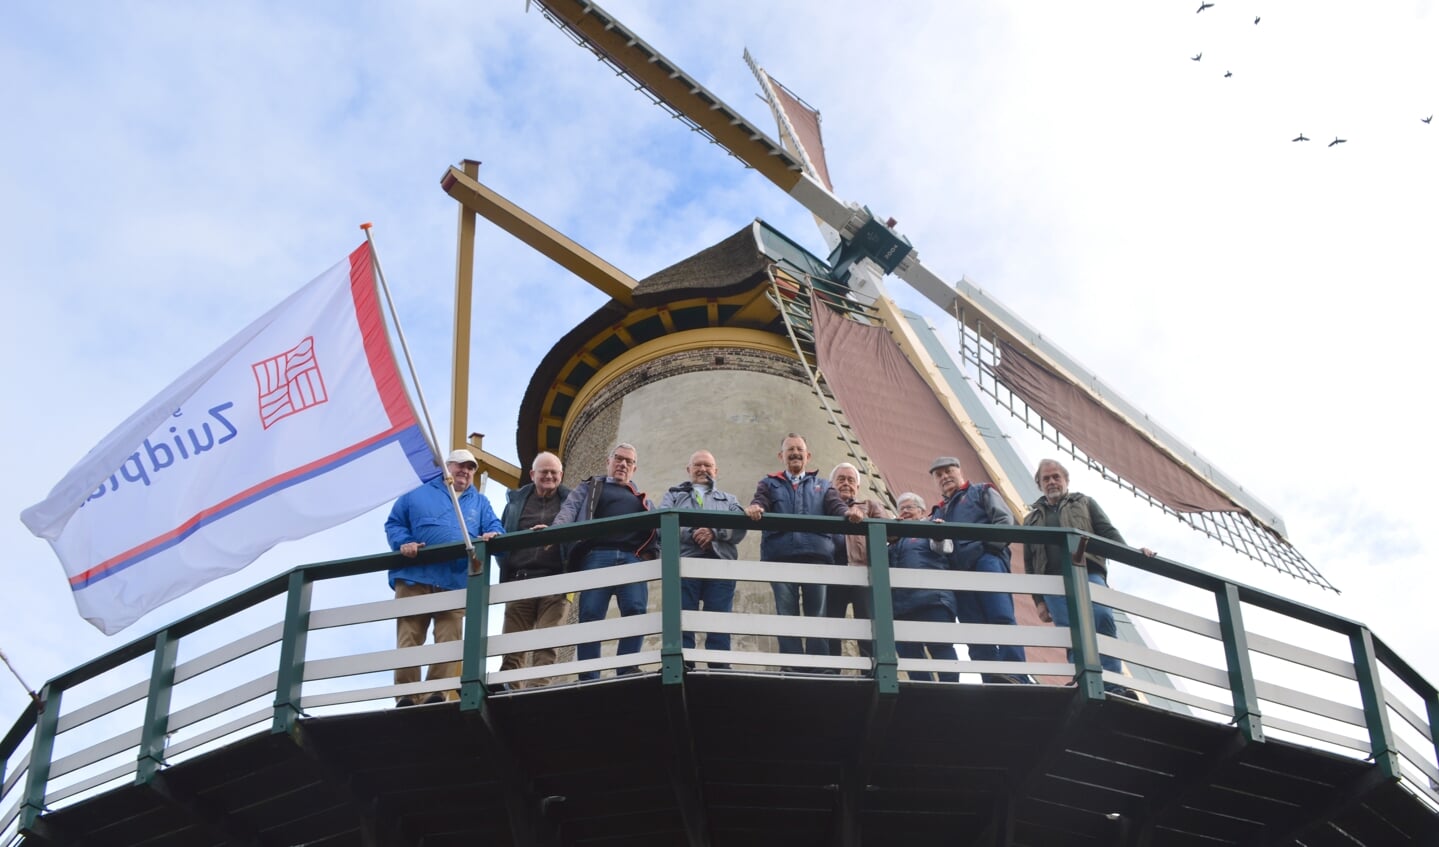 Acht vrijwilligers vertelden Nico Papineau Salm (derde van links) met trots over hun betrokkenheid bij de molen.